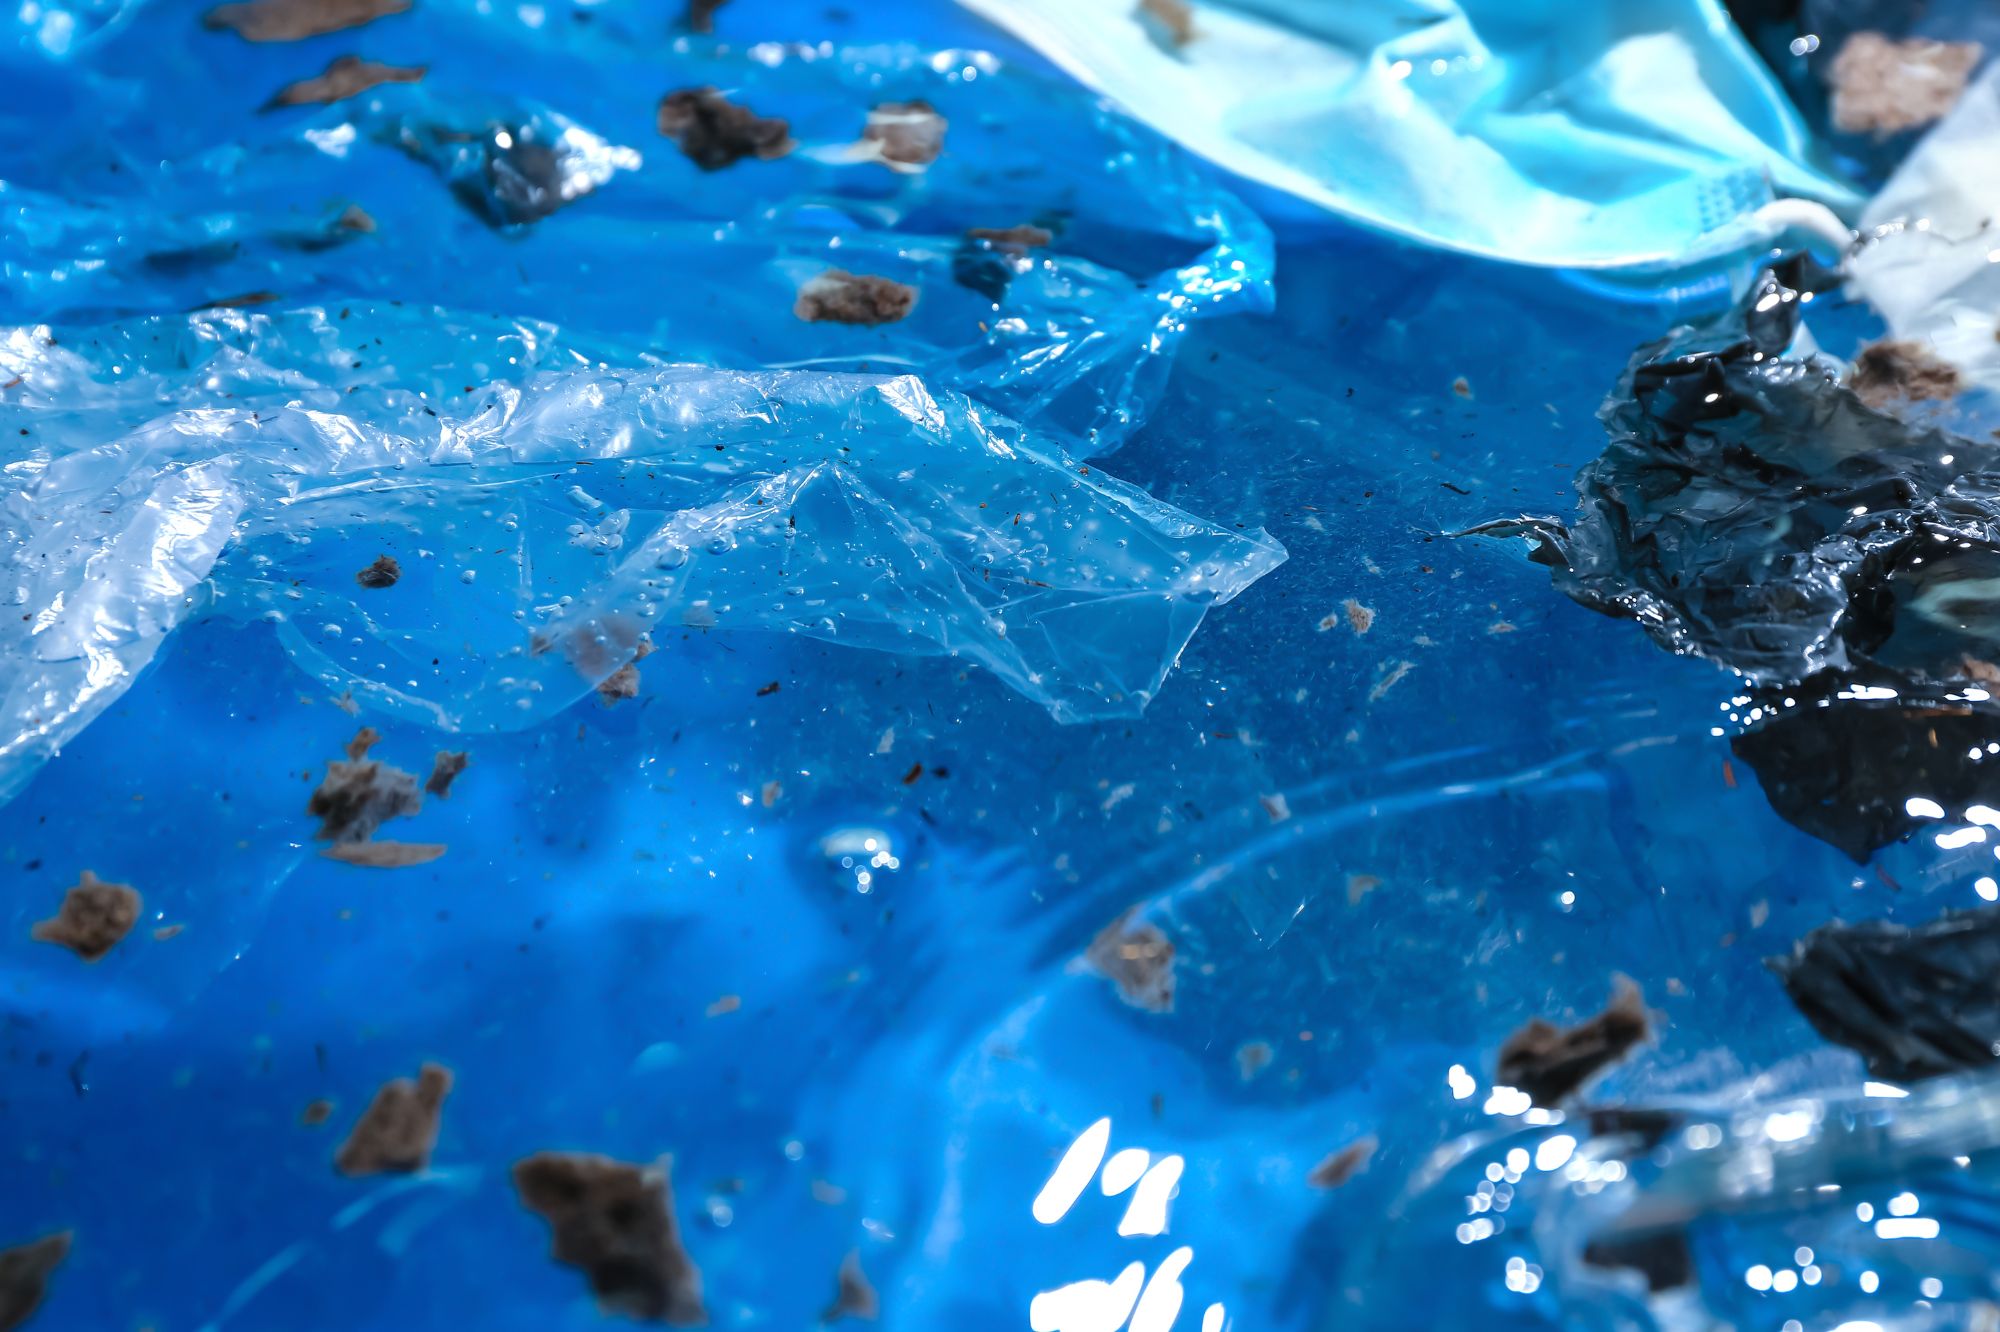 Plastic litter in ocean